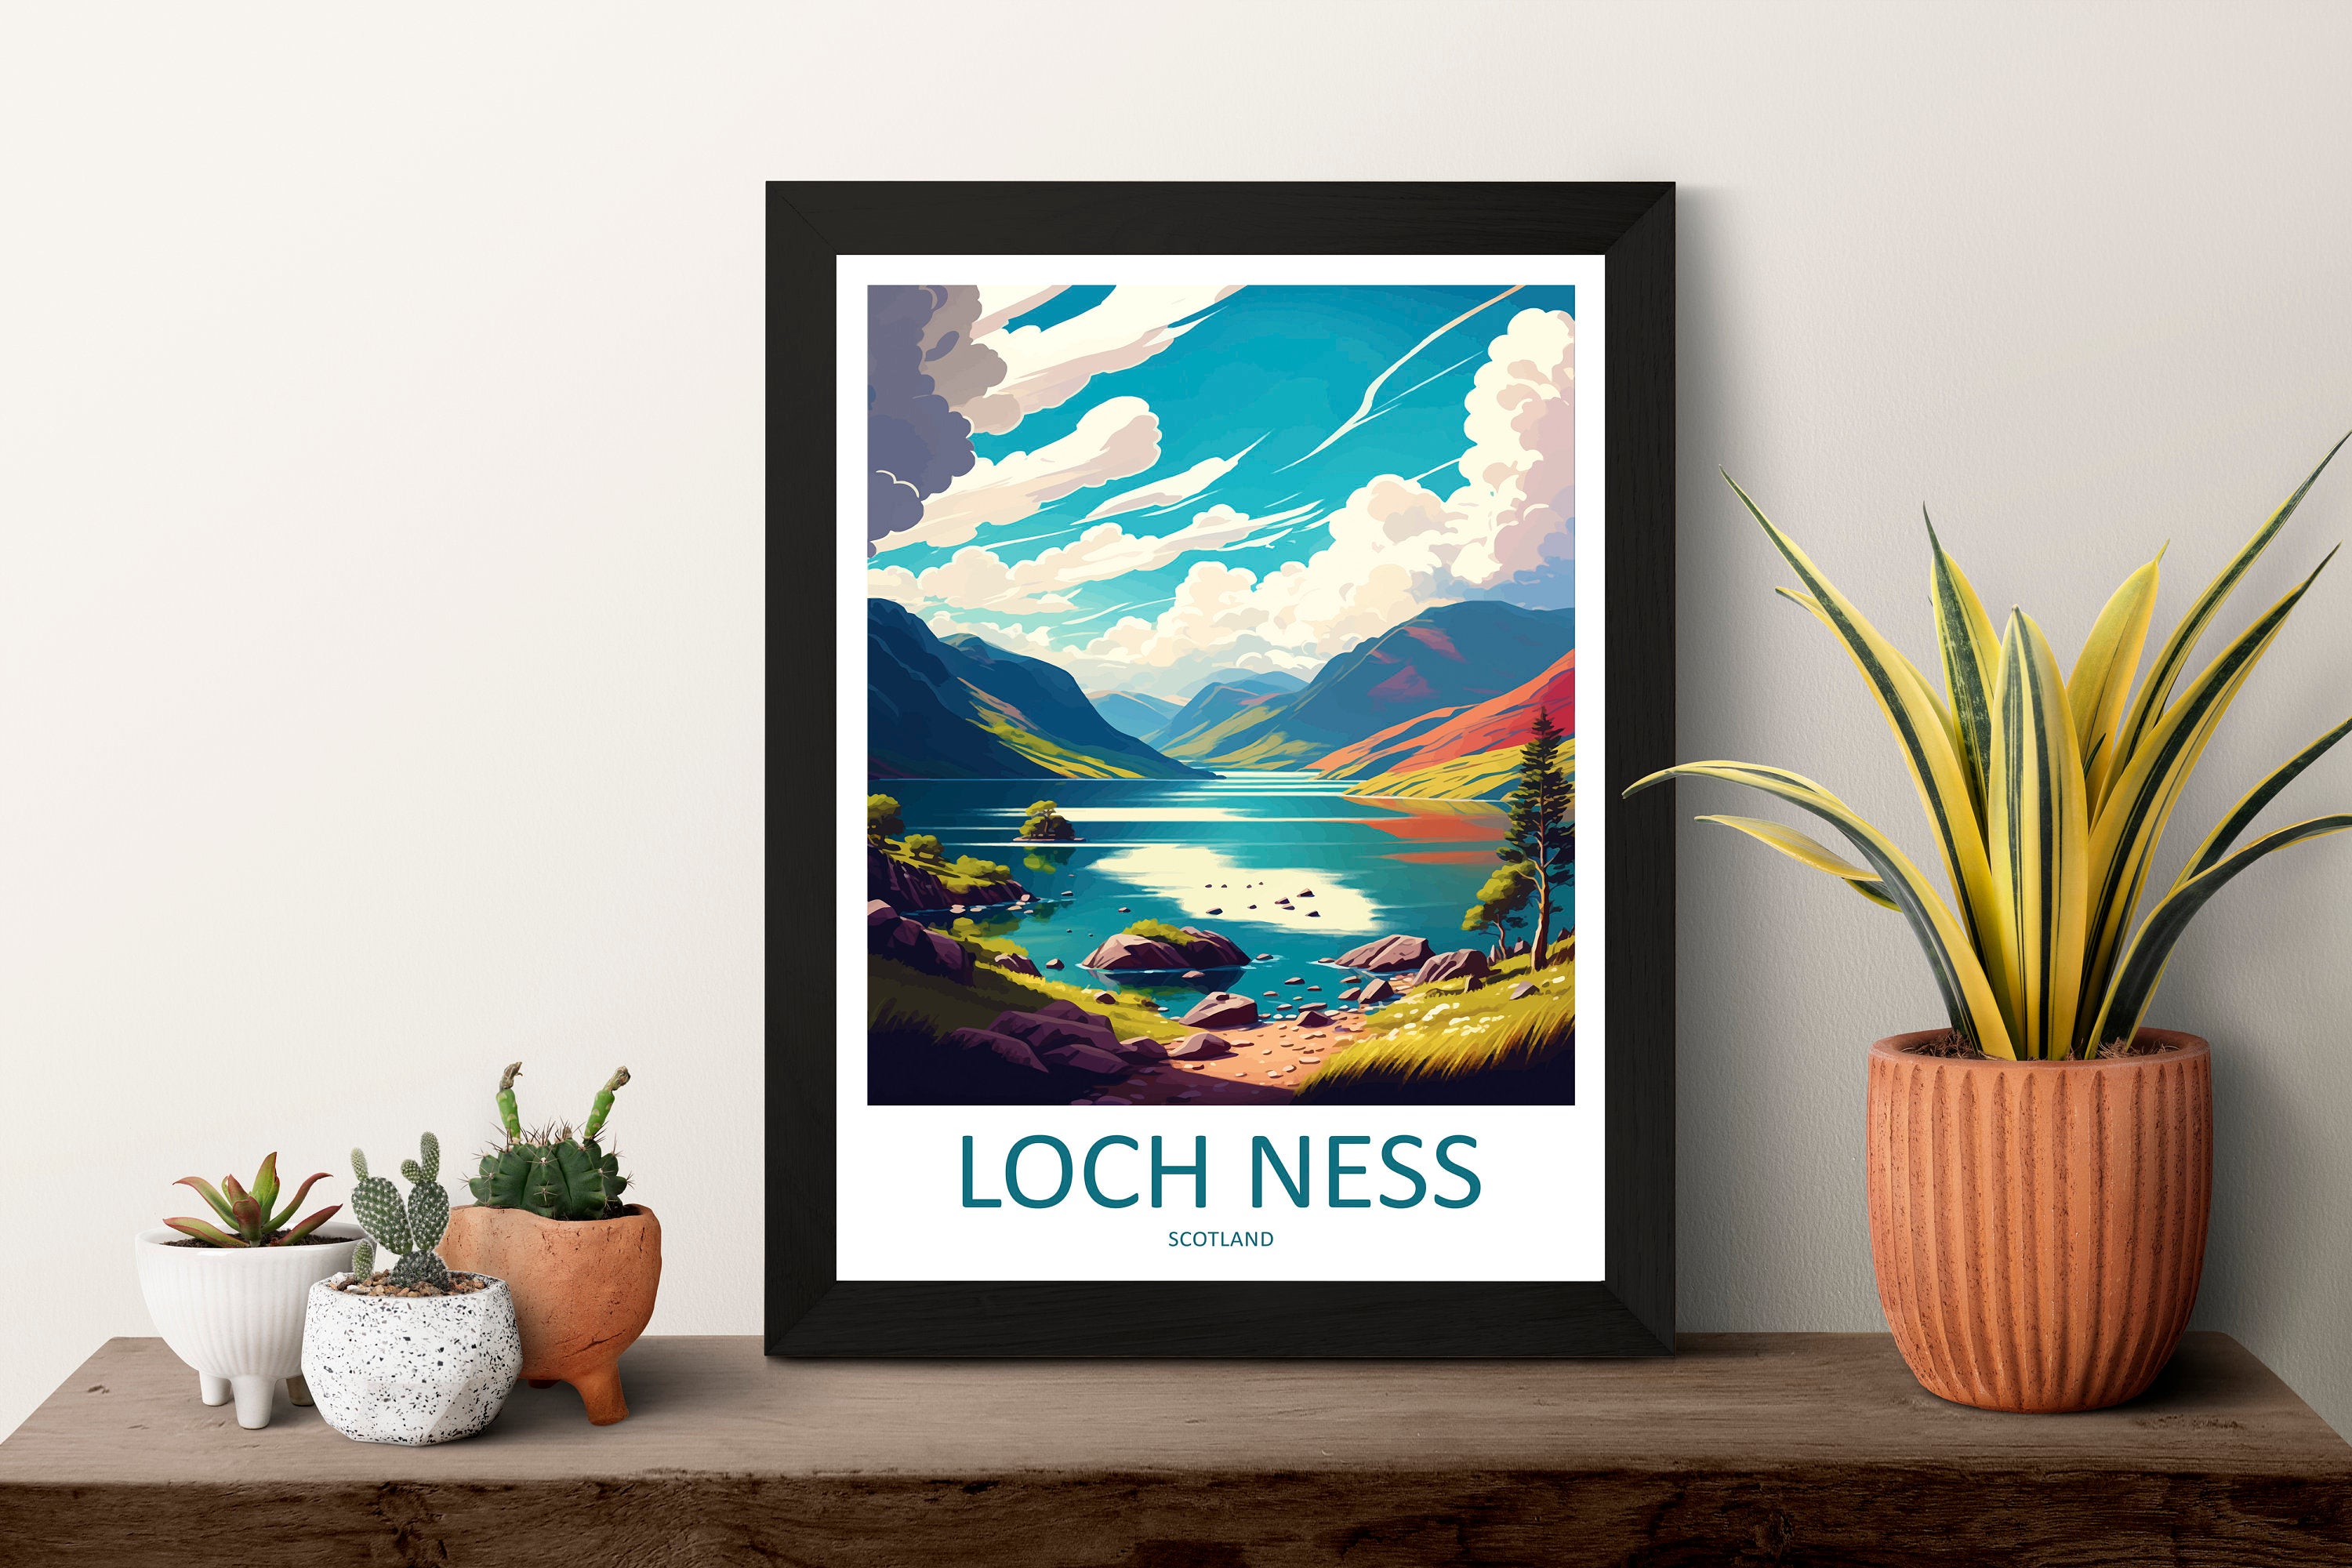 Loch Ness Print Loch Ness Home Décor Landscape Art Print Loch Ness Wall Art for Scotland Enthusiast Gift Wall Hanging Loch Ness Scotland Art